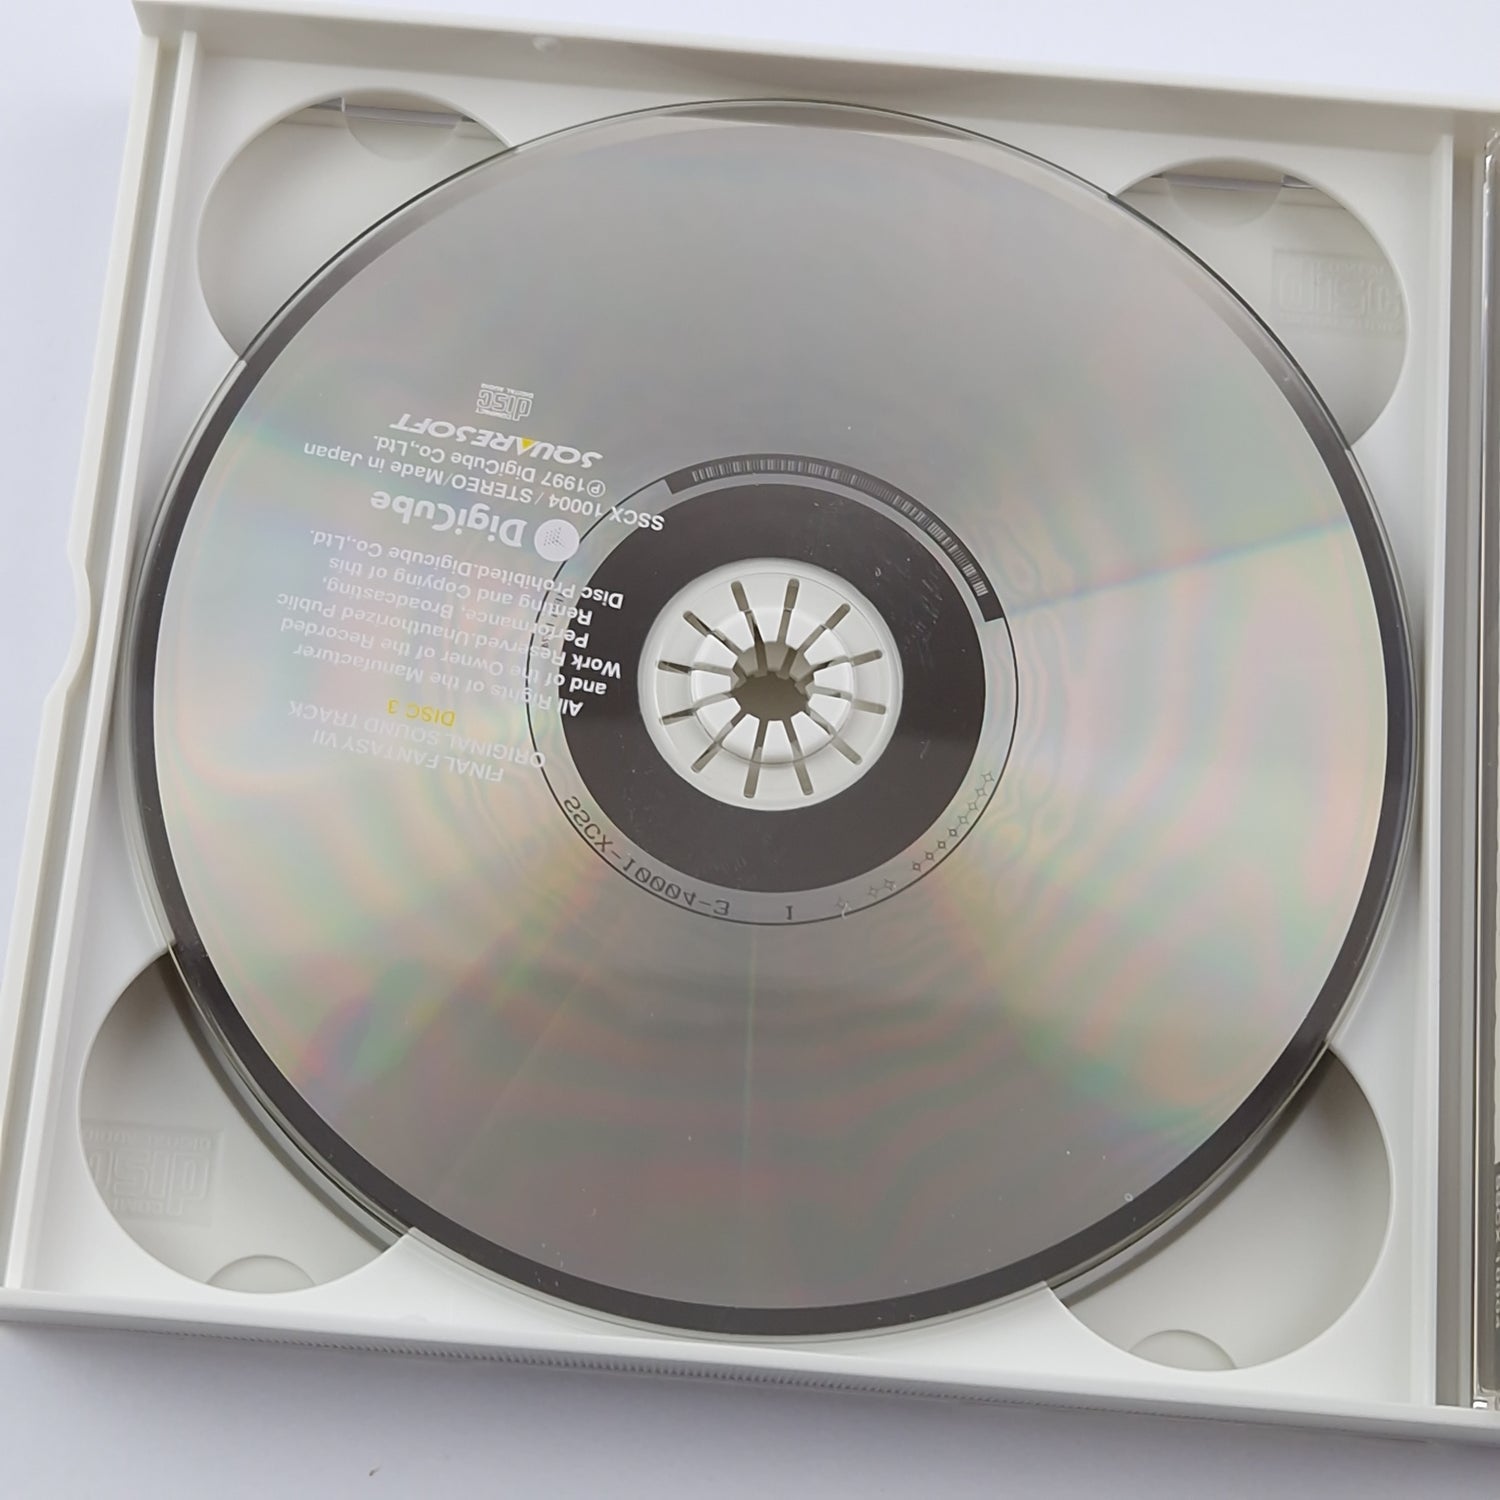 Original Video Game Soundtrack : Final Fantasy VII 7 - Music CD - DigiCube PS1